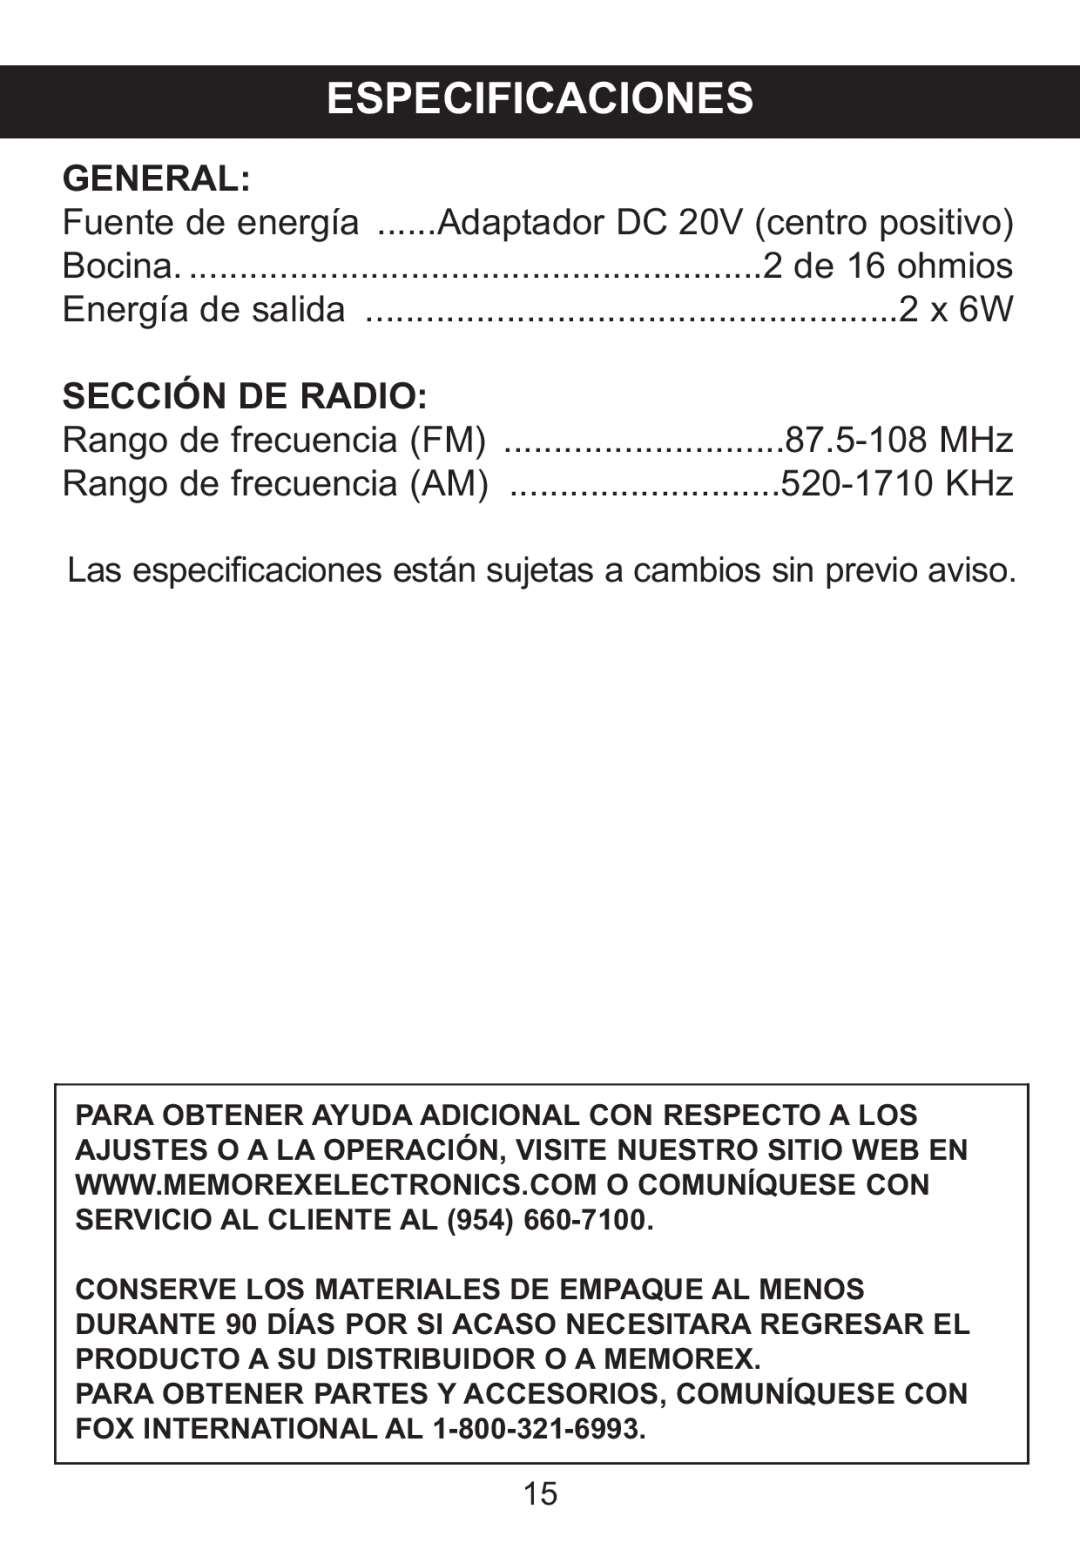 Memorex Mi1006 manual Especificaciones, General, Sección De Radio 